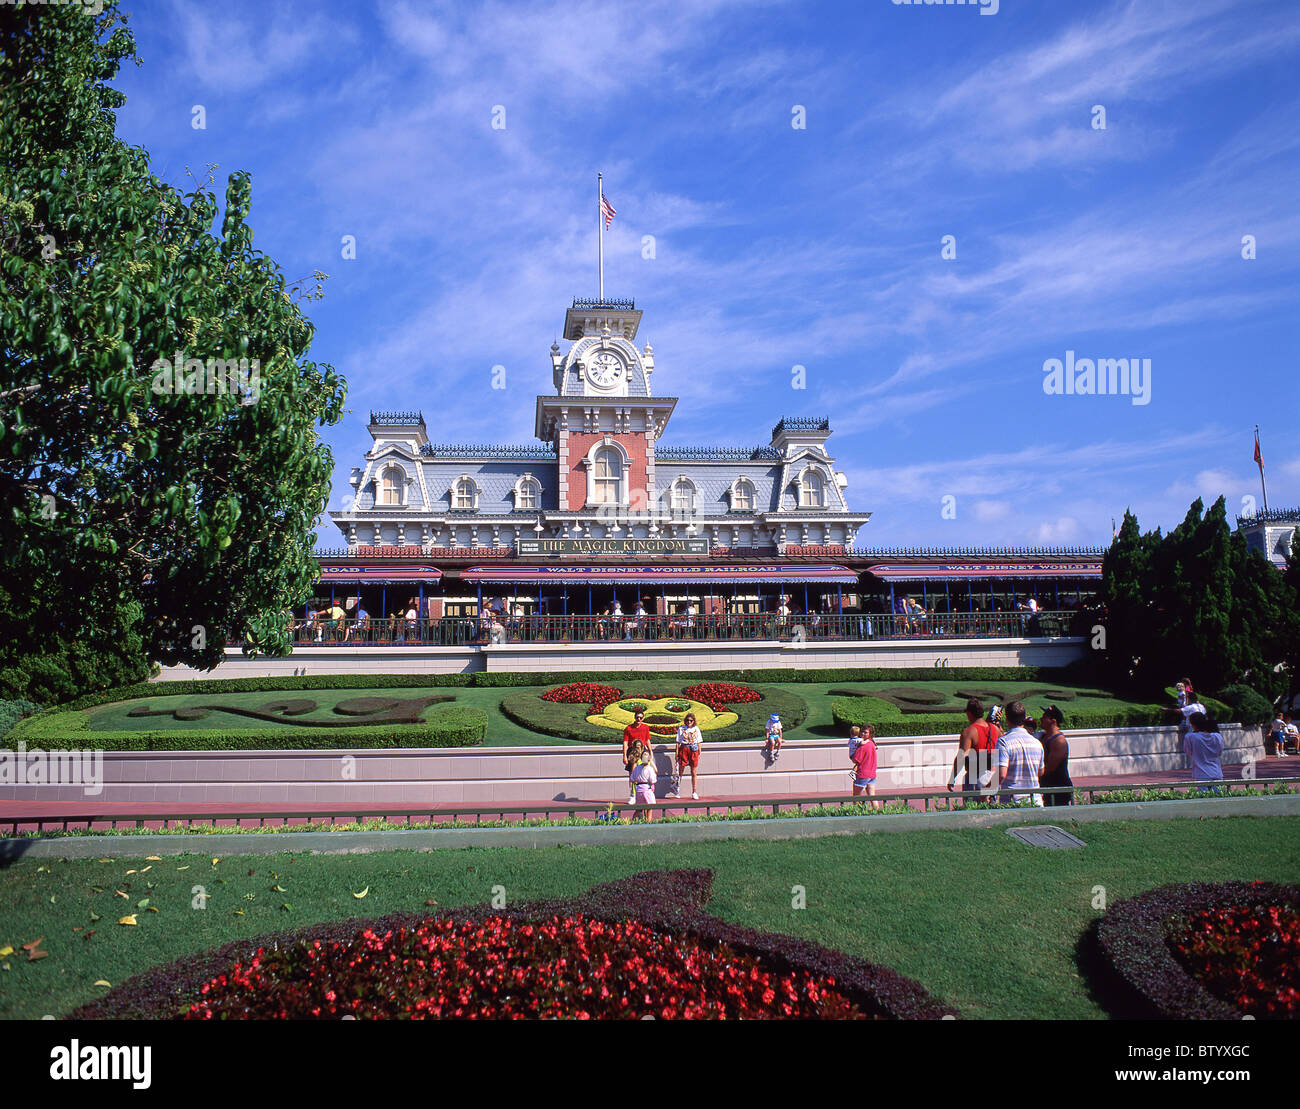 Park entrance, Walt Disney World, Orlando, Florida, United States of America Stock Photo